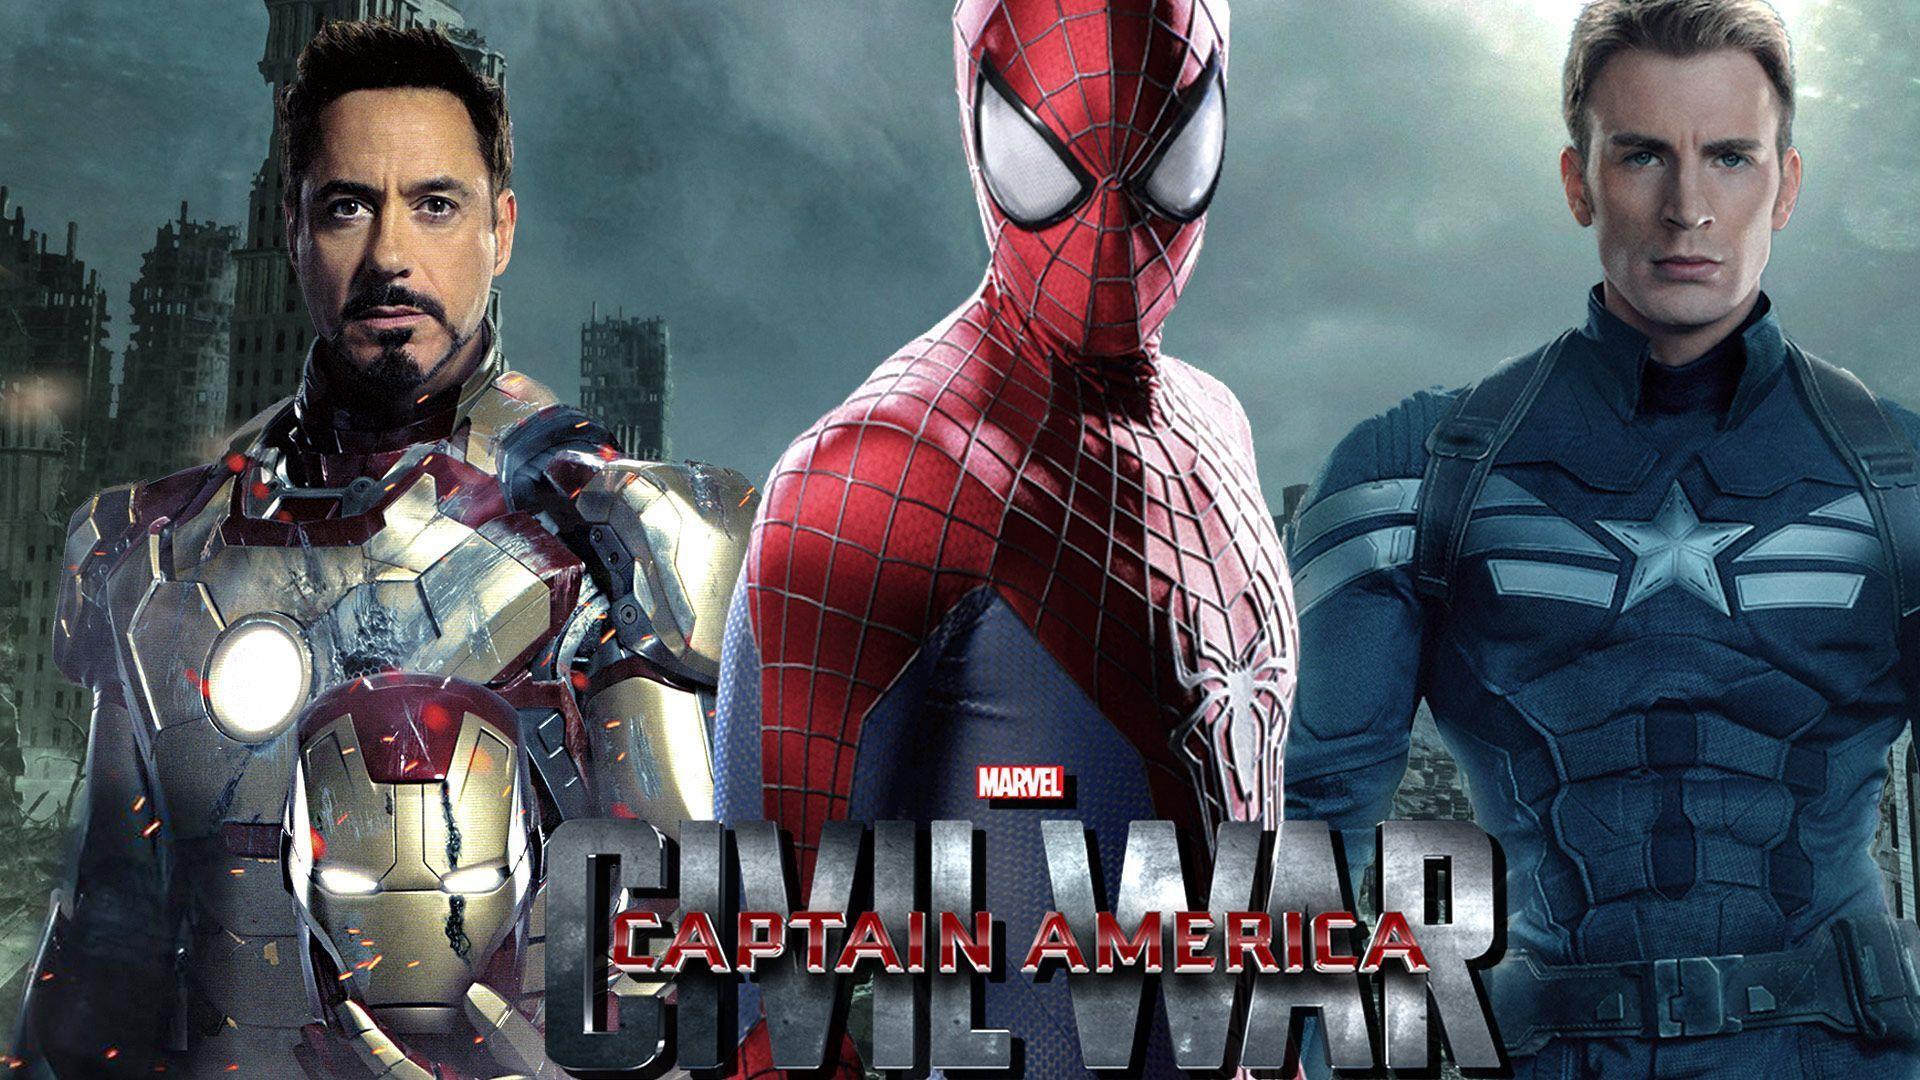 Captain America civil war spiderman wallpapers – Free full hd